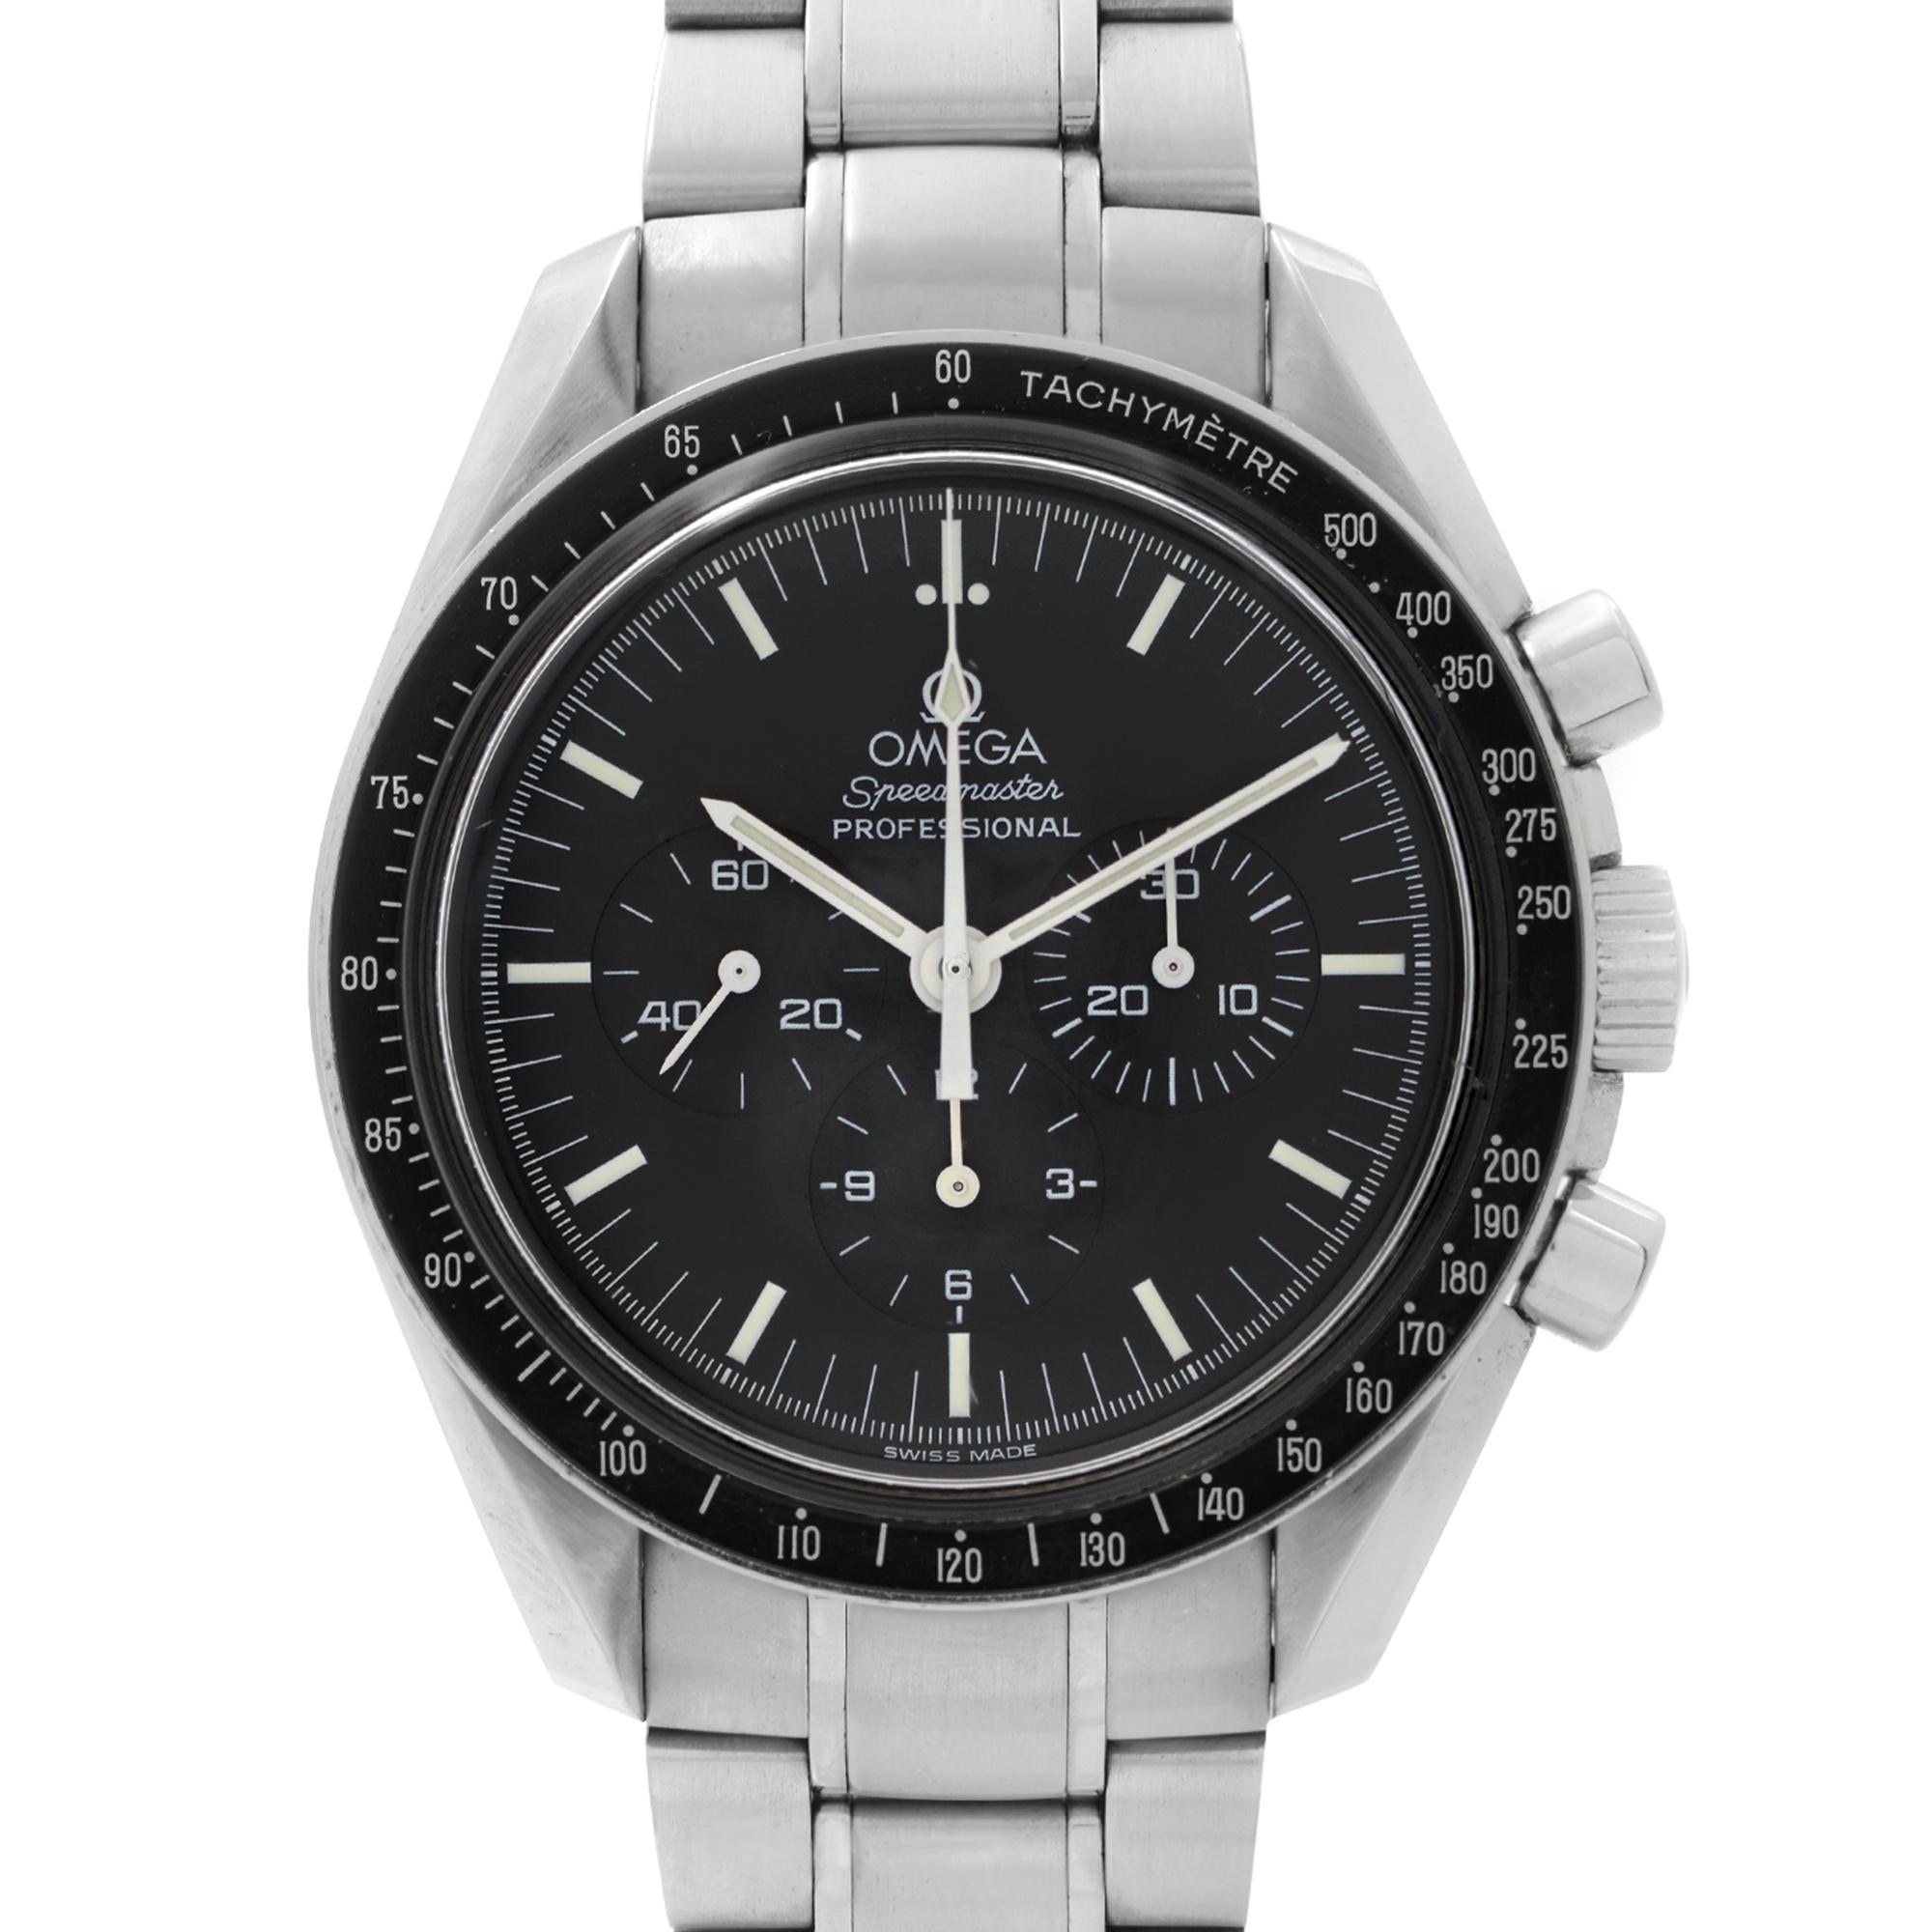 Preowned Omega Speedmaster Professional Moonwatch Steel Black Dial Manual-Wind Men's Watch 3572.50.00. Cette montre a été produite en 1998. Caractéristiques : Boîtier en acier inoxydable brossé et bracelet en acier. Lunette fixe noire avec